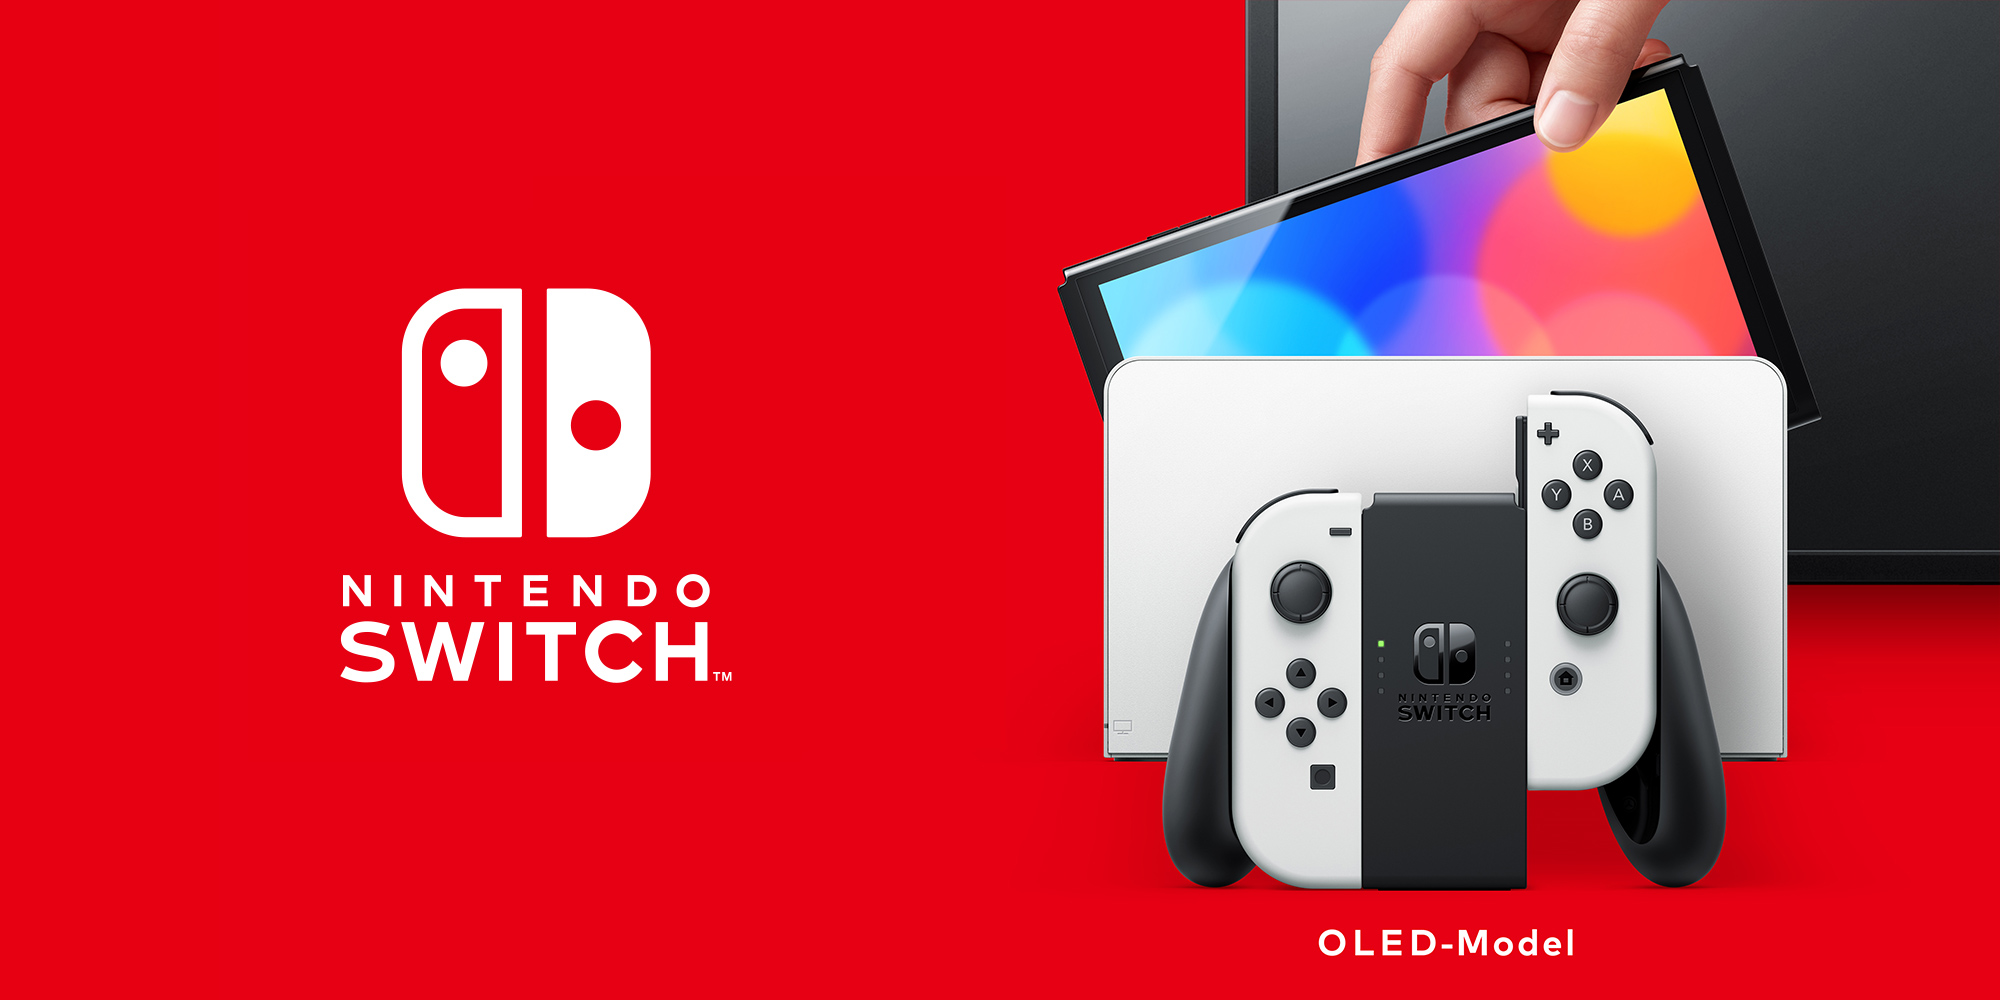 Nintendo Switch – OLED-Model Hardware | Nintendo